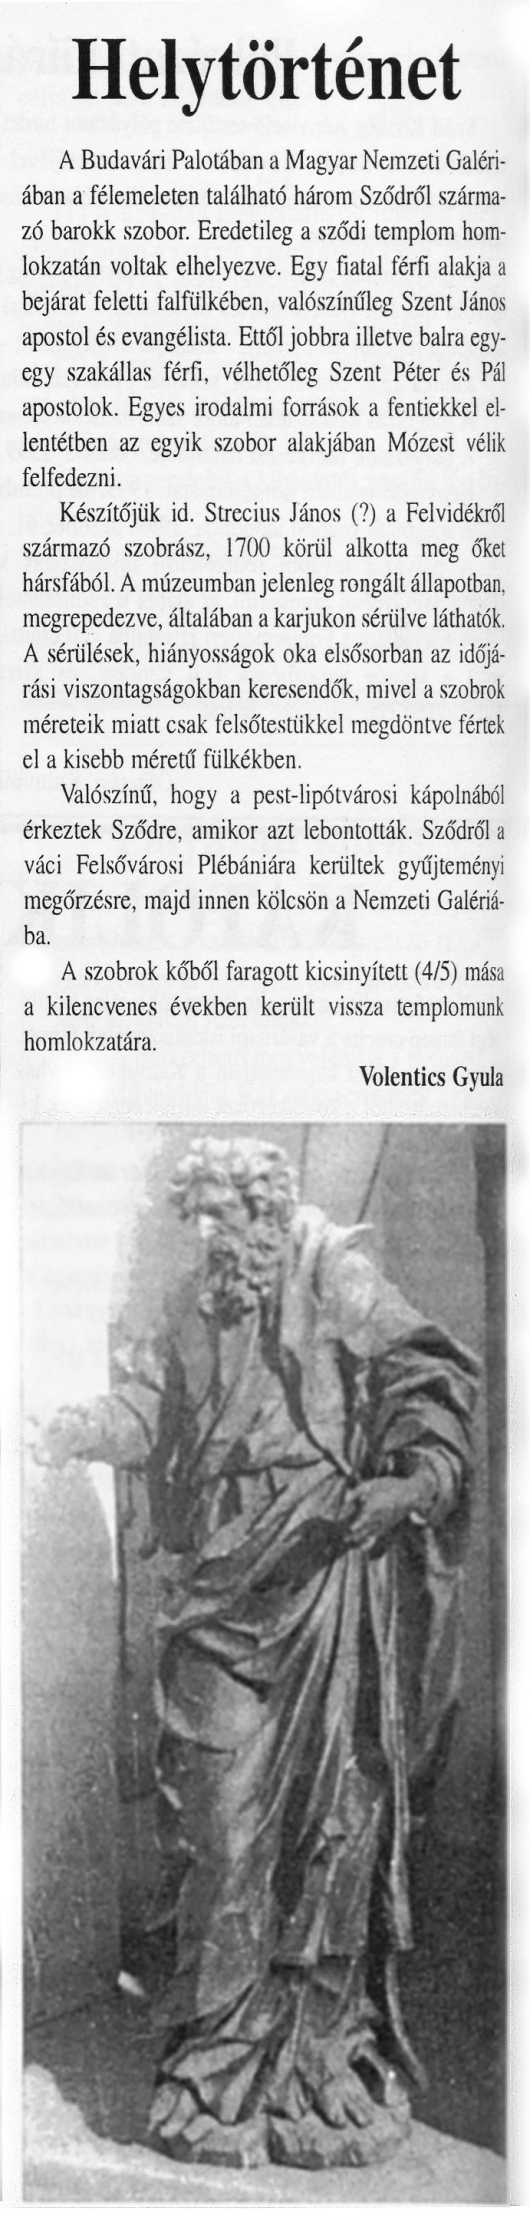 Három sződi barokk szobor (Helytörténet) – Sződiek Híradója (1999. június)